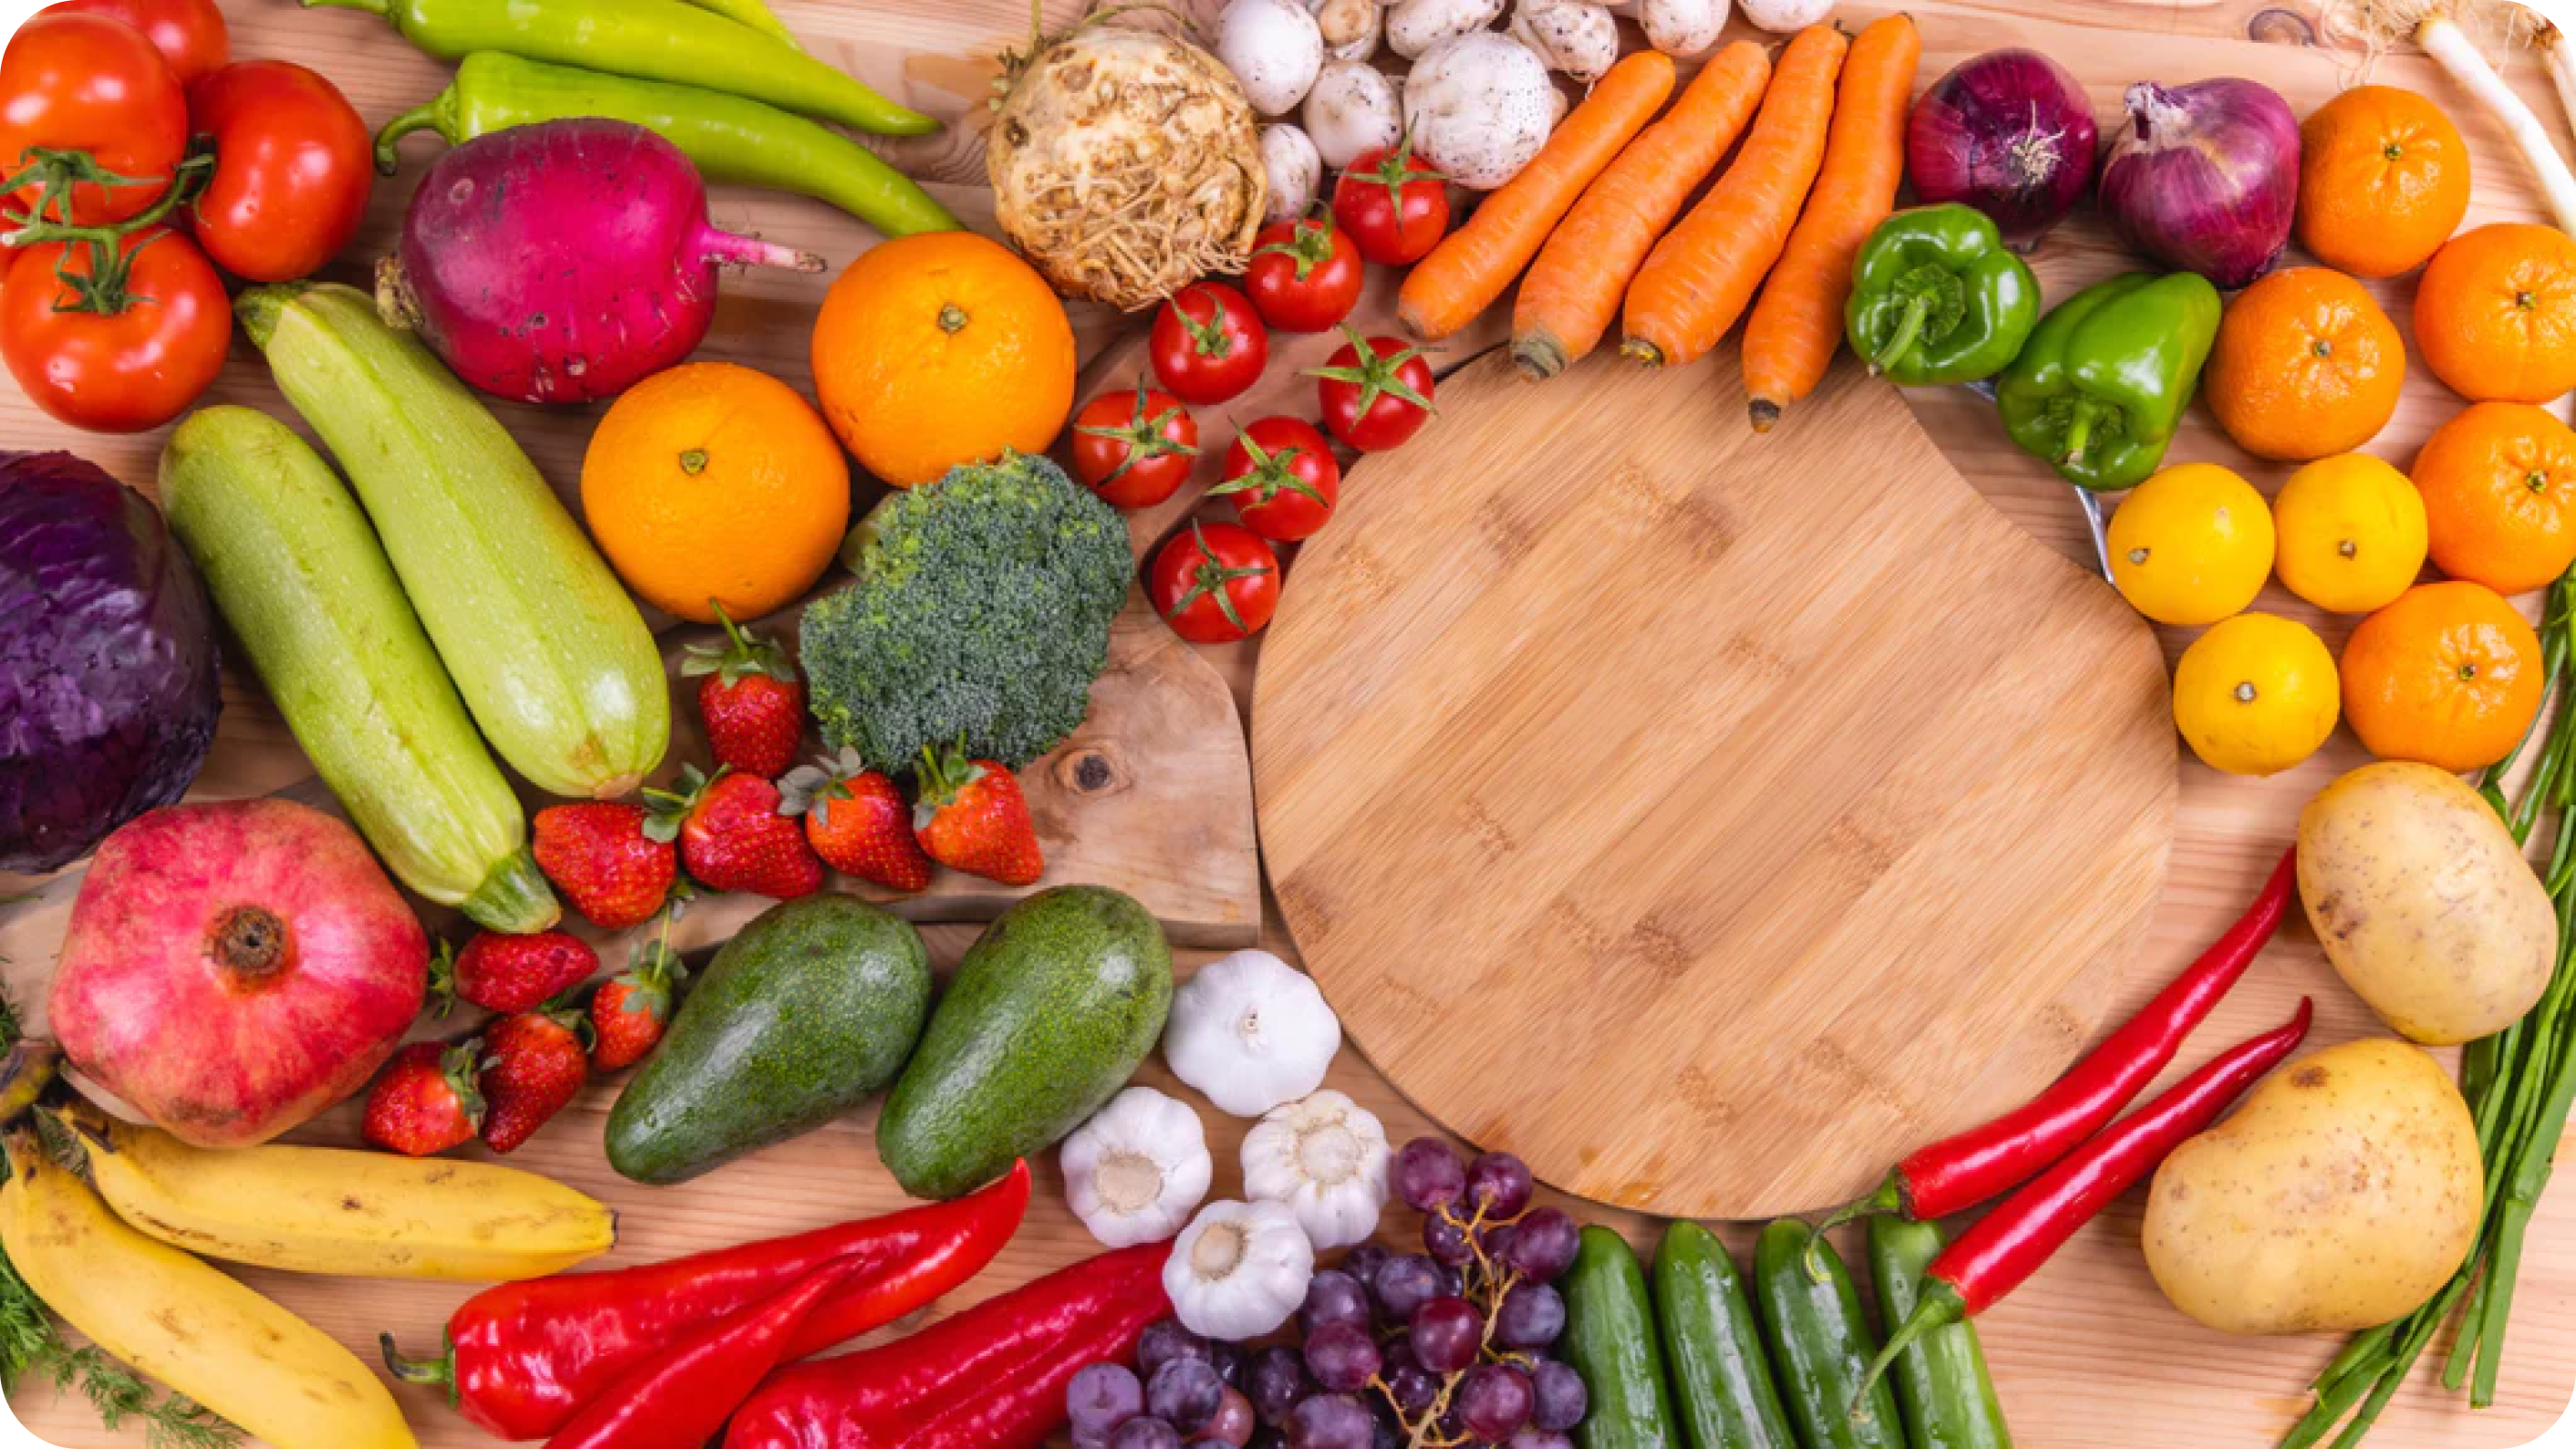 Vielfältige Auswahl an basischen Gemüsesorten, darunter Blattgrün, Karotten, Gurken und Tomaten, arrangiert als Symbol für einen ausgewogenen Säure-Basen-Haushalt und die Bedeutung des pH-Werts für eine gesunde Ernährung.